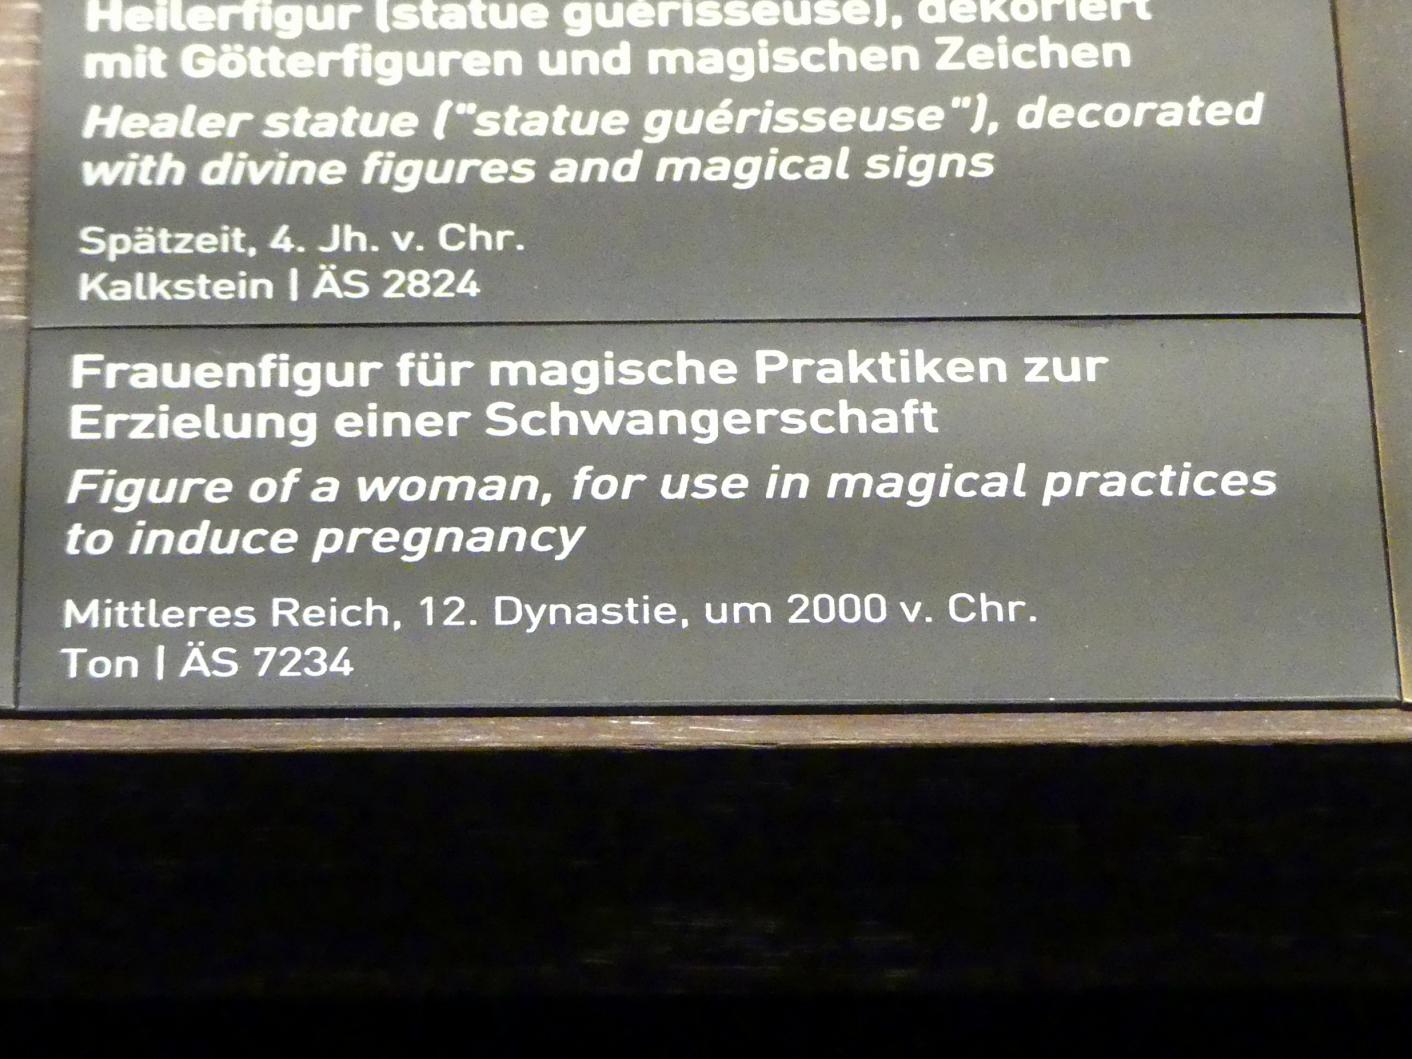 Frauenfigur für magische Praktiken zur Erzielung einer Schwangerschaft, 12. Dynastie, 1678 - 1634 v. Chr., 2000 v. Chr., Bild 2/2